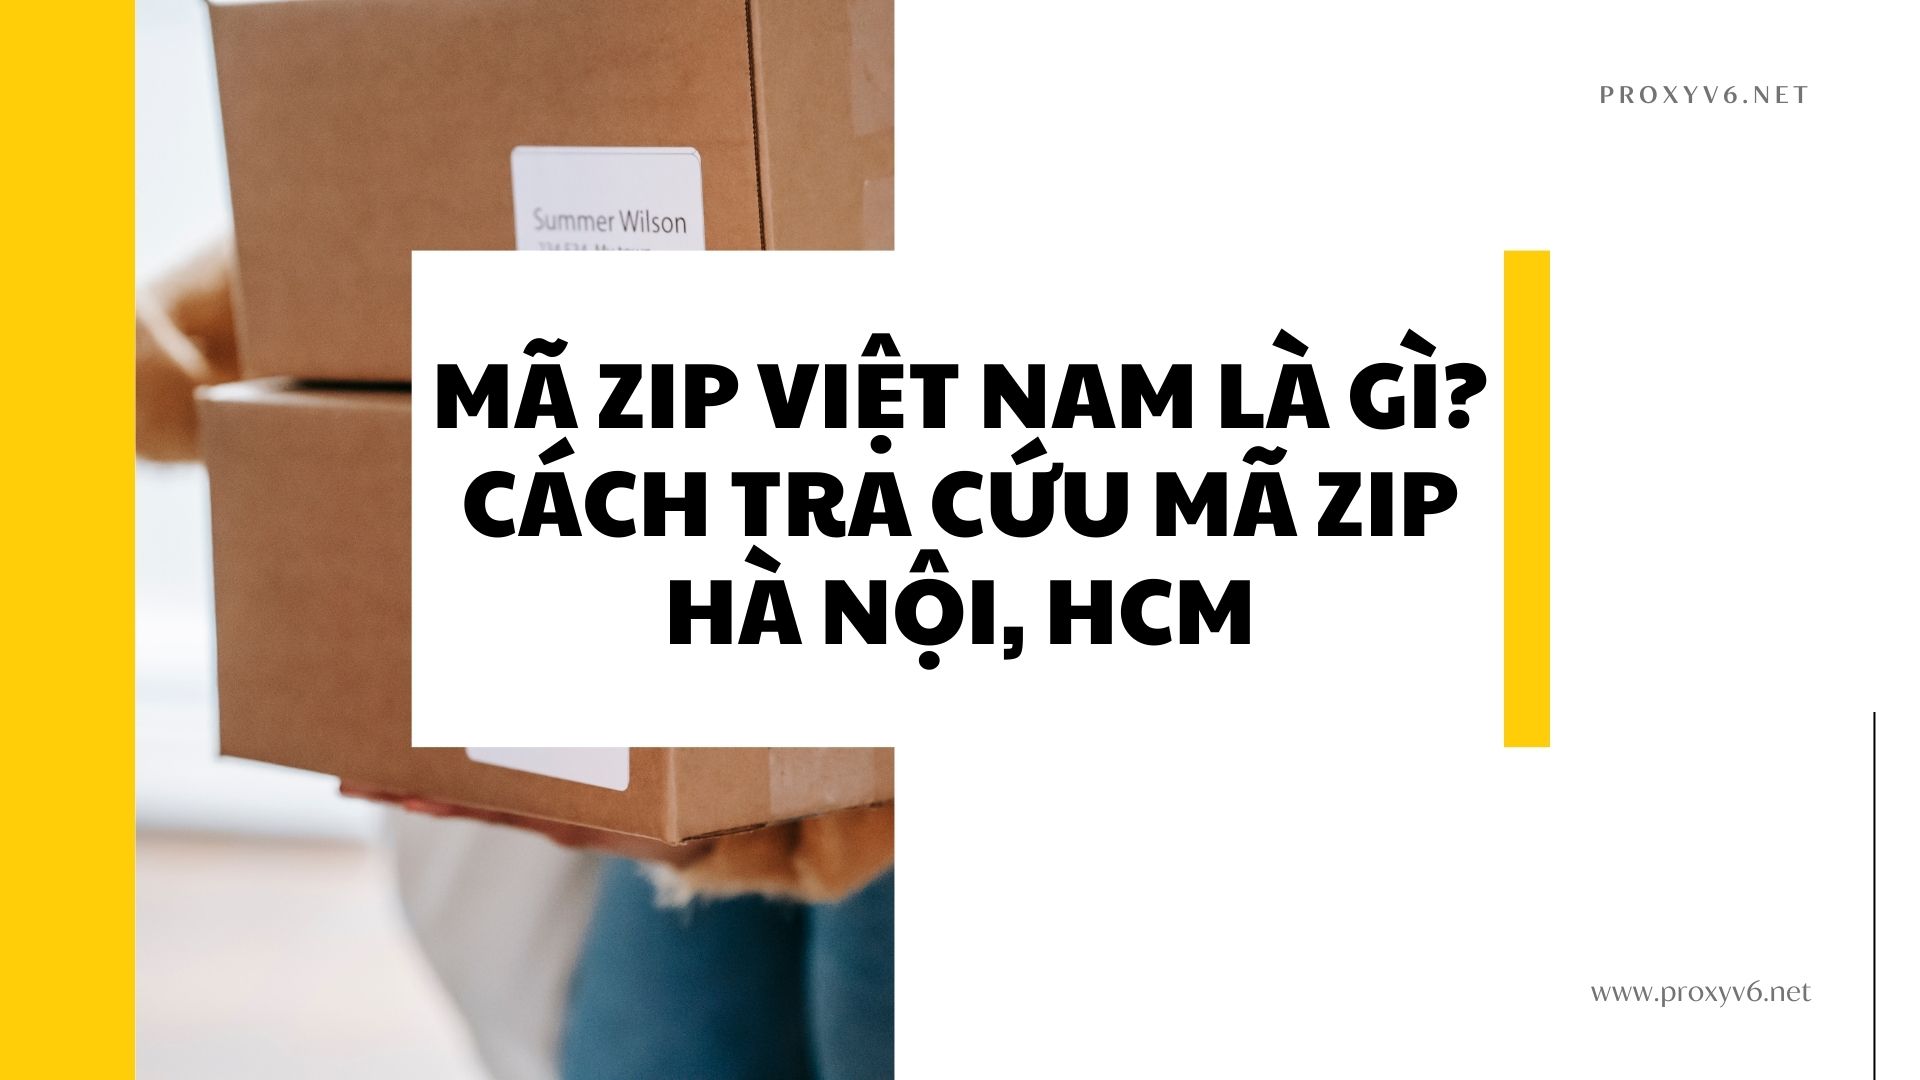 Mã Zip Việt Nam là gì? Cách tra cứu mã Zip Hà Nội, HCM